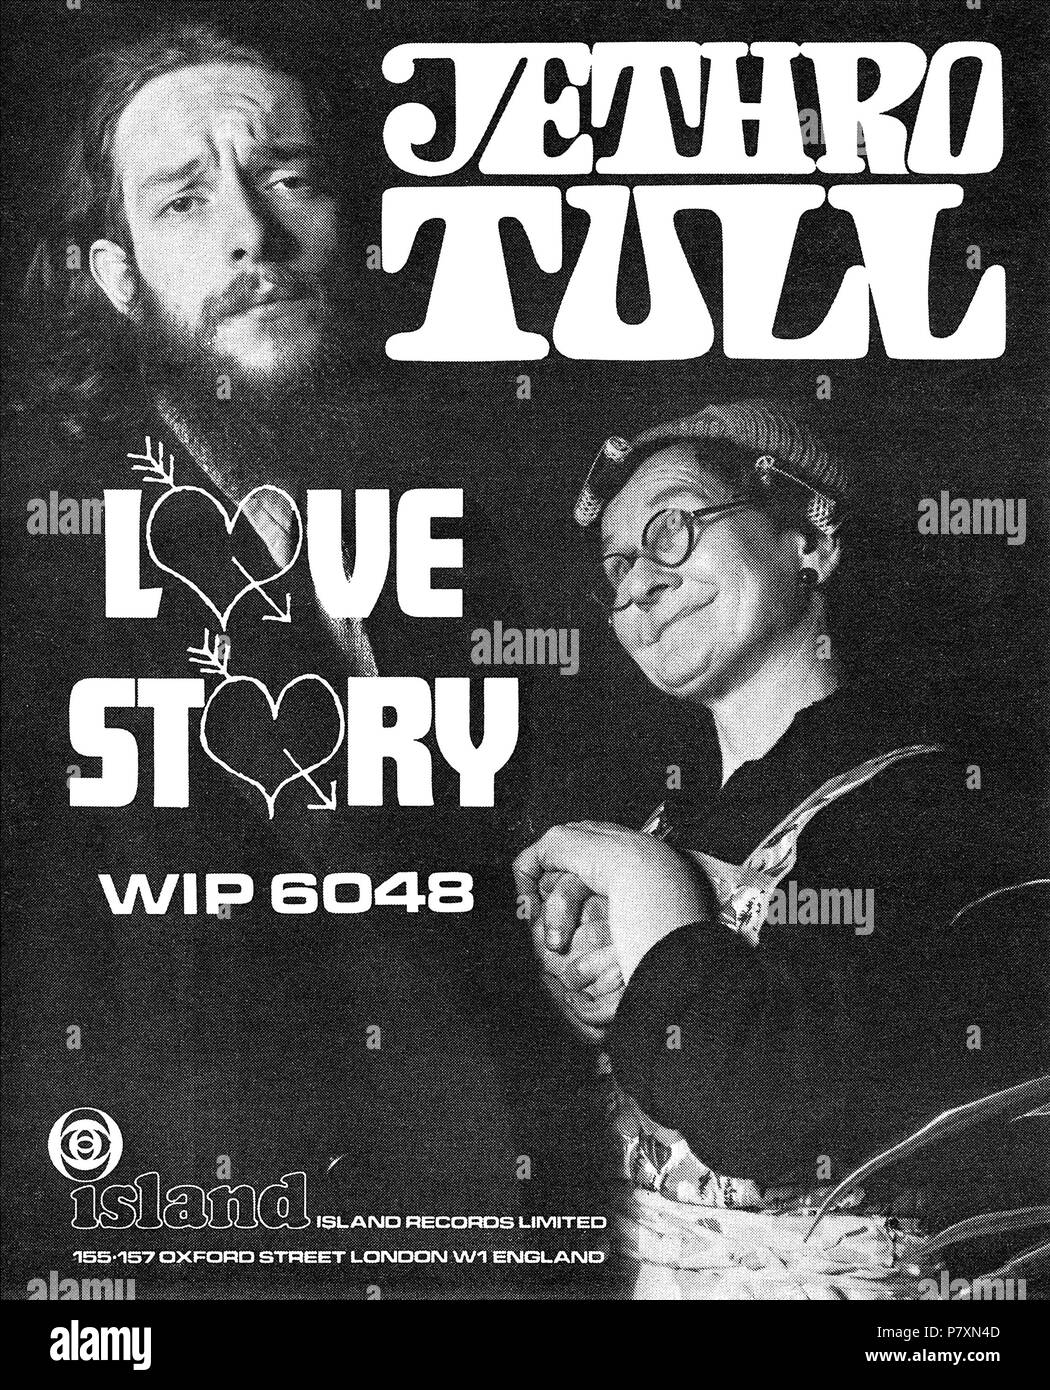 1968 La publicité pour la 7' 45 tr/min seule histoire d'amour de Jethro Tull sur Island Records, montrant Ian Anderson. Banque D'Images